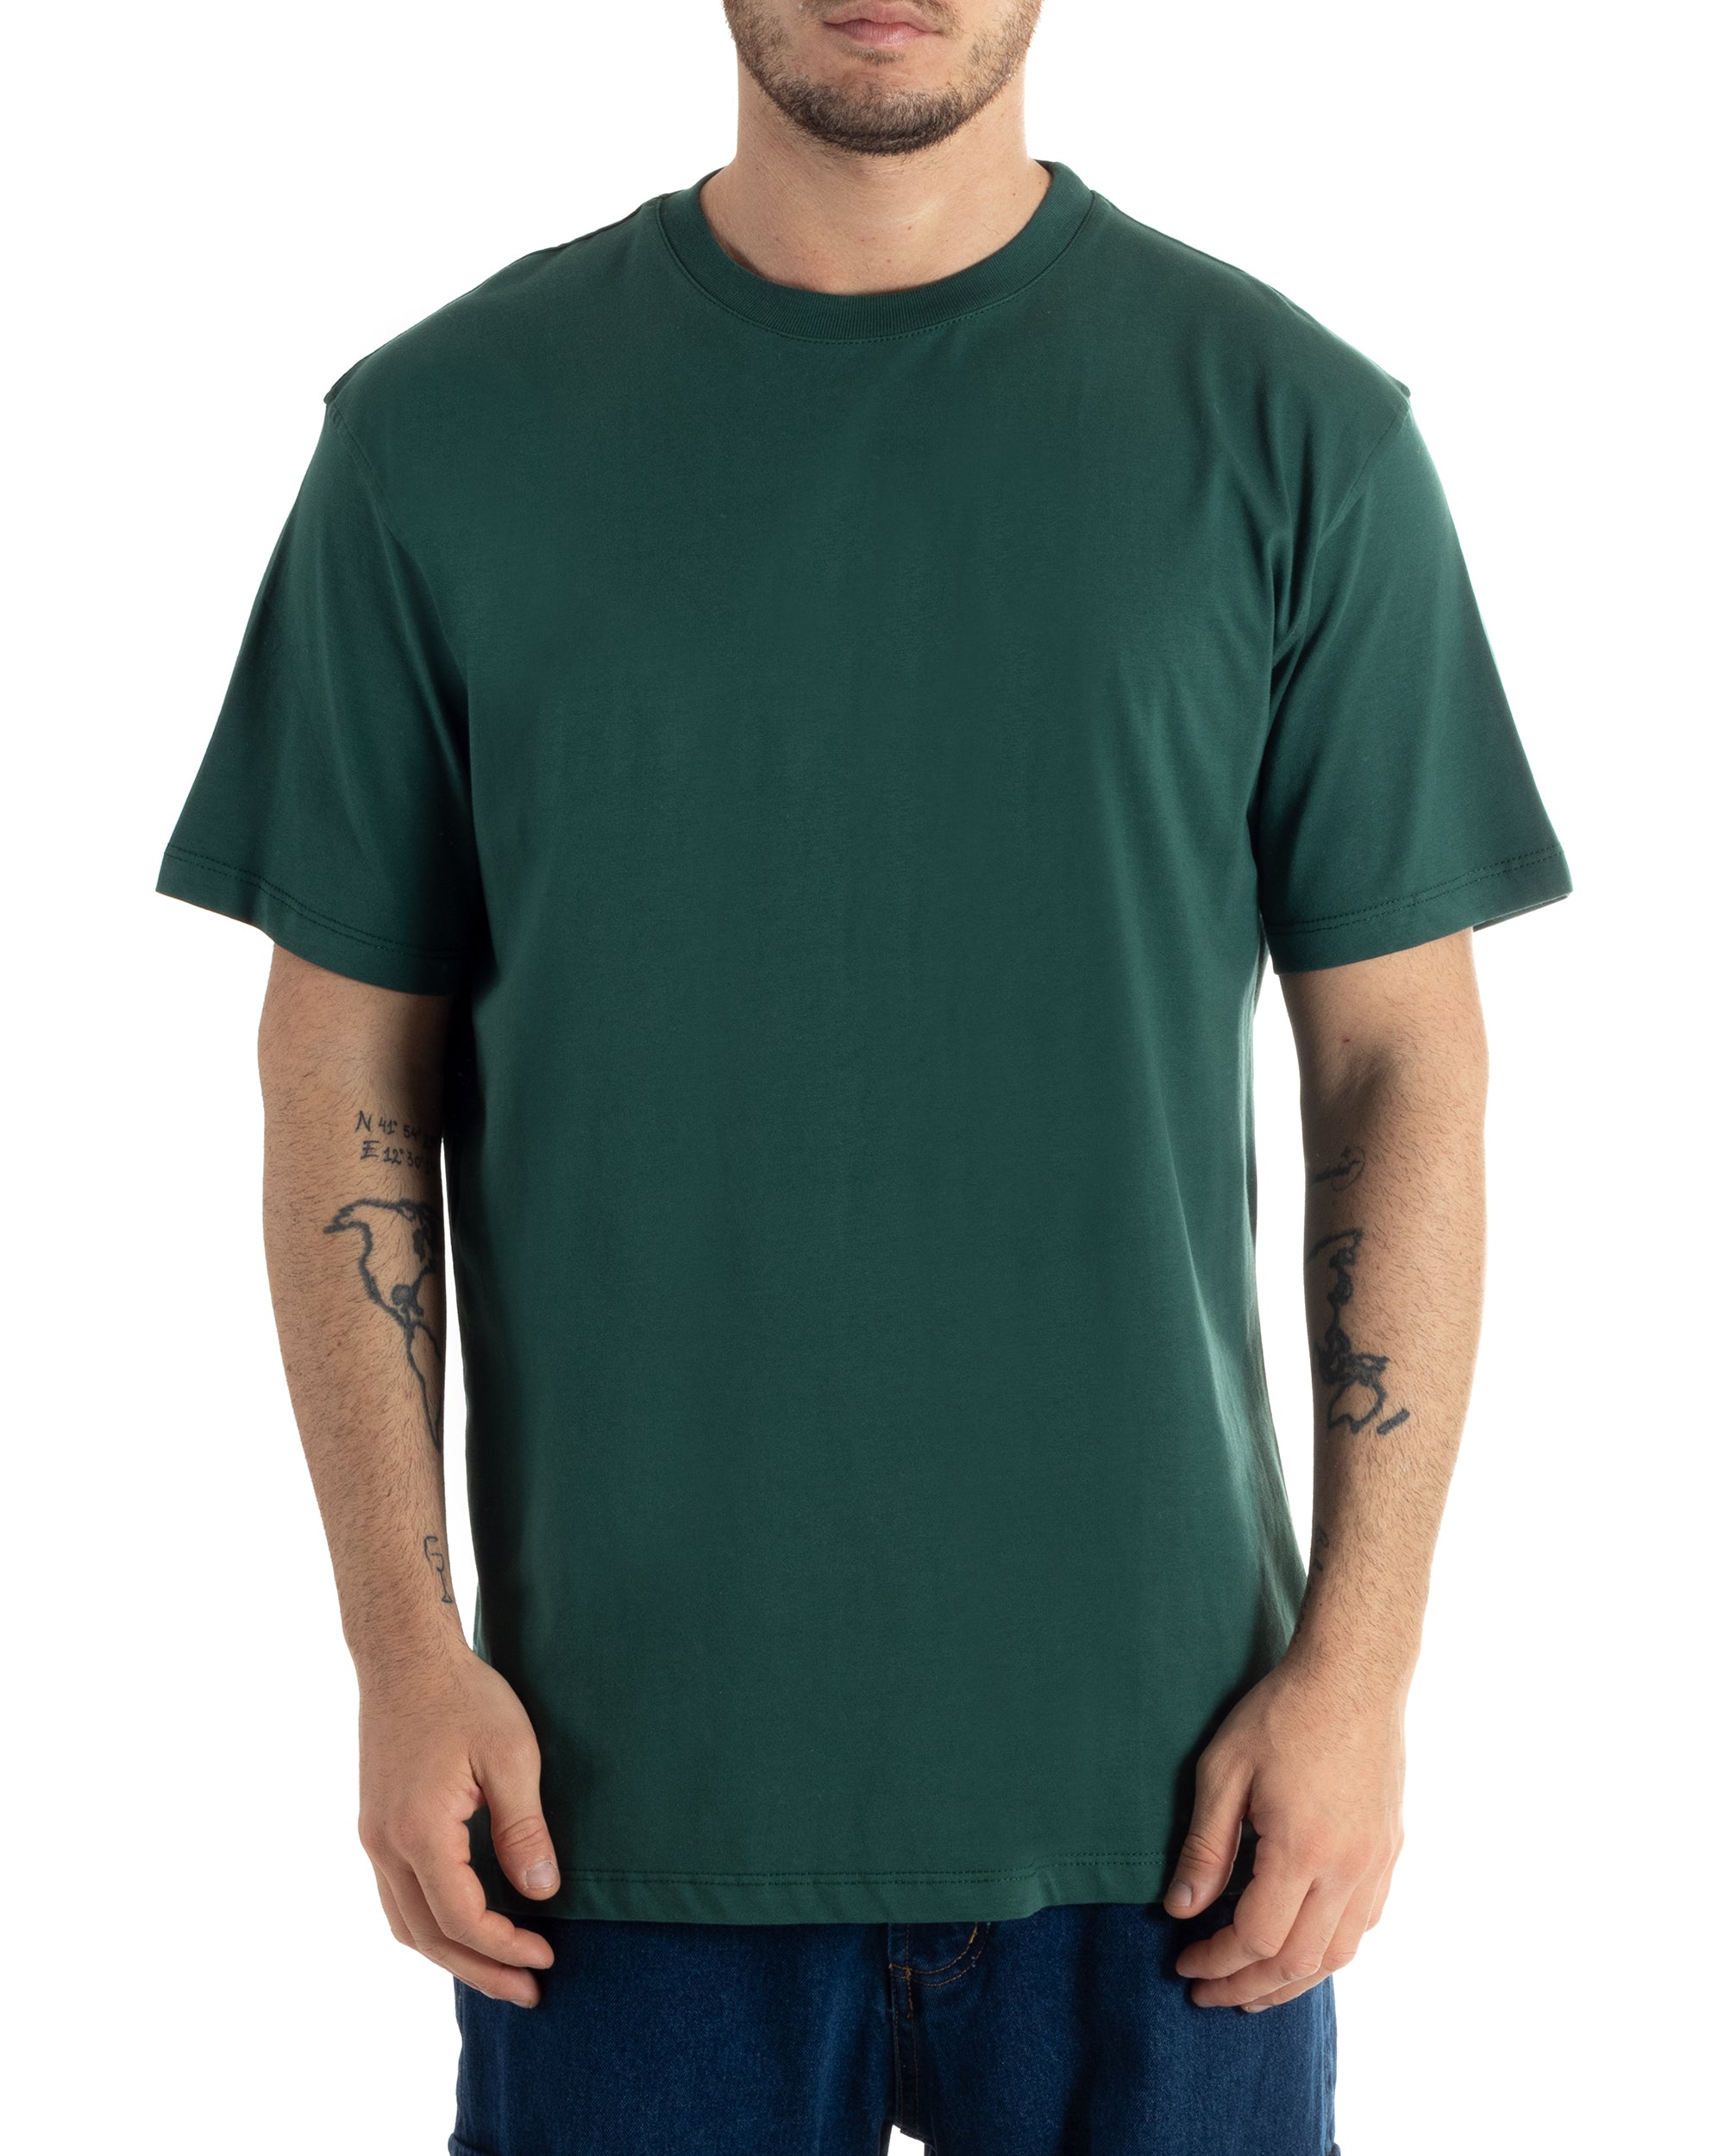 T-shirt Uomo Cotone Basic Tinta Unita Verde Girocollo Casual Gola Alta GIOSAL-TS2980A